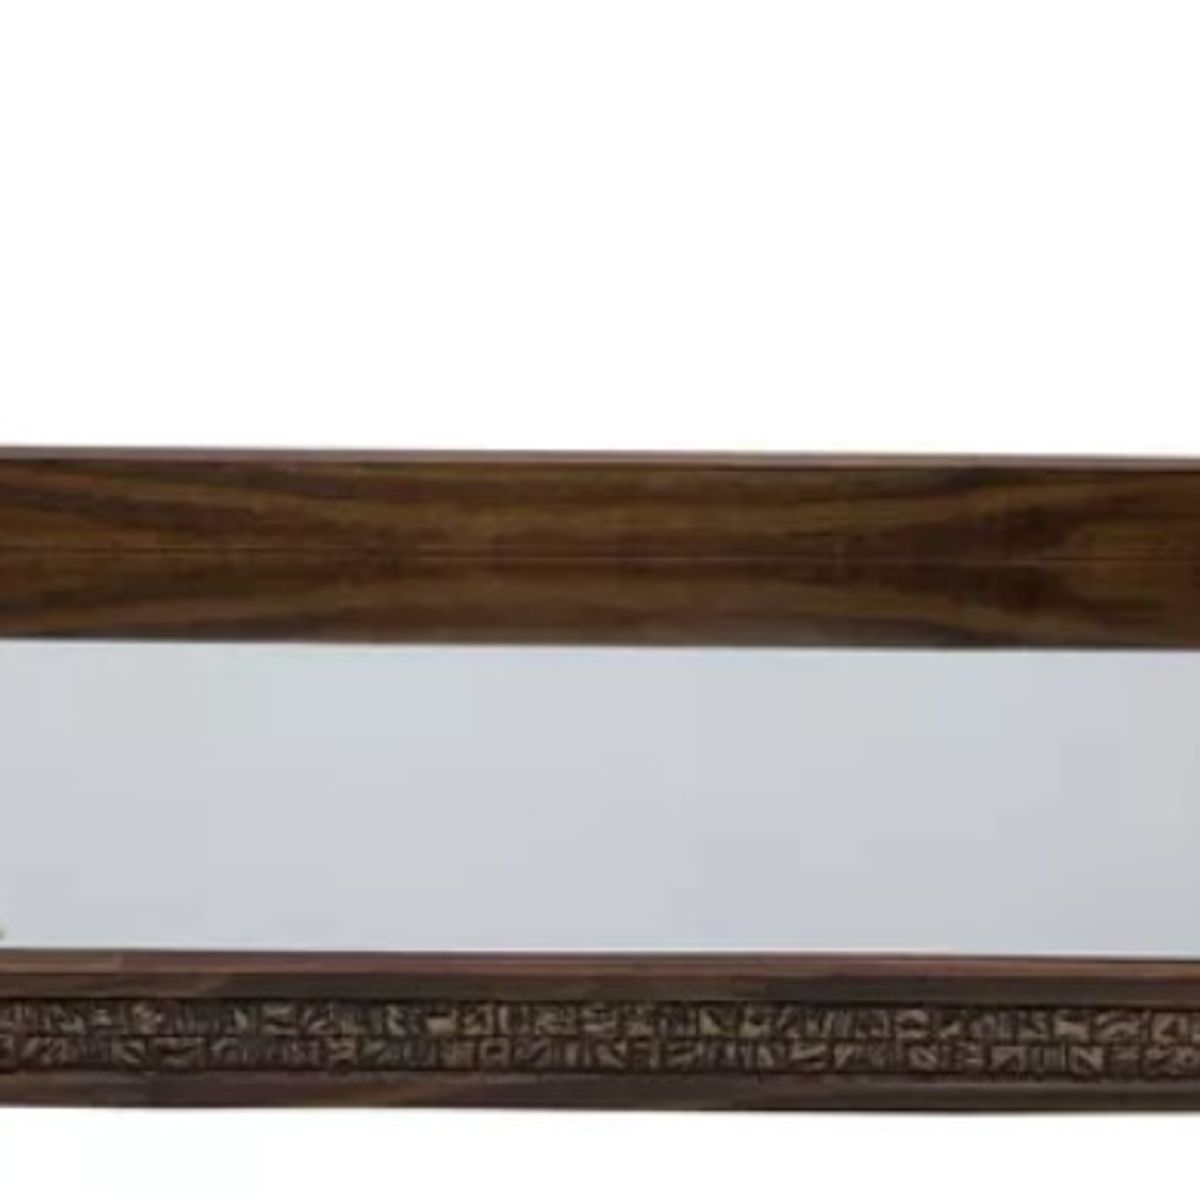 WOODART Coquinho Bandeja de Madeira com Espelho, Marrom, 51 x 35 x 5 cm